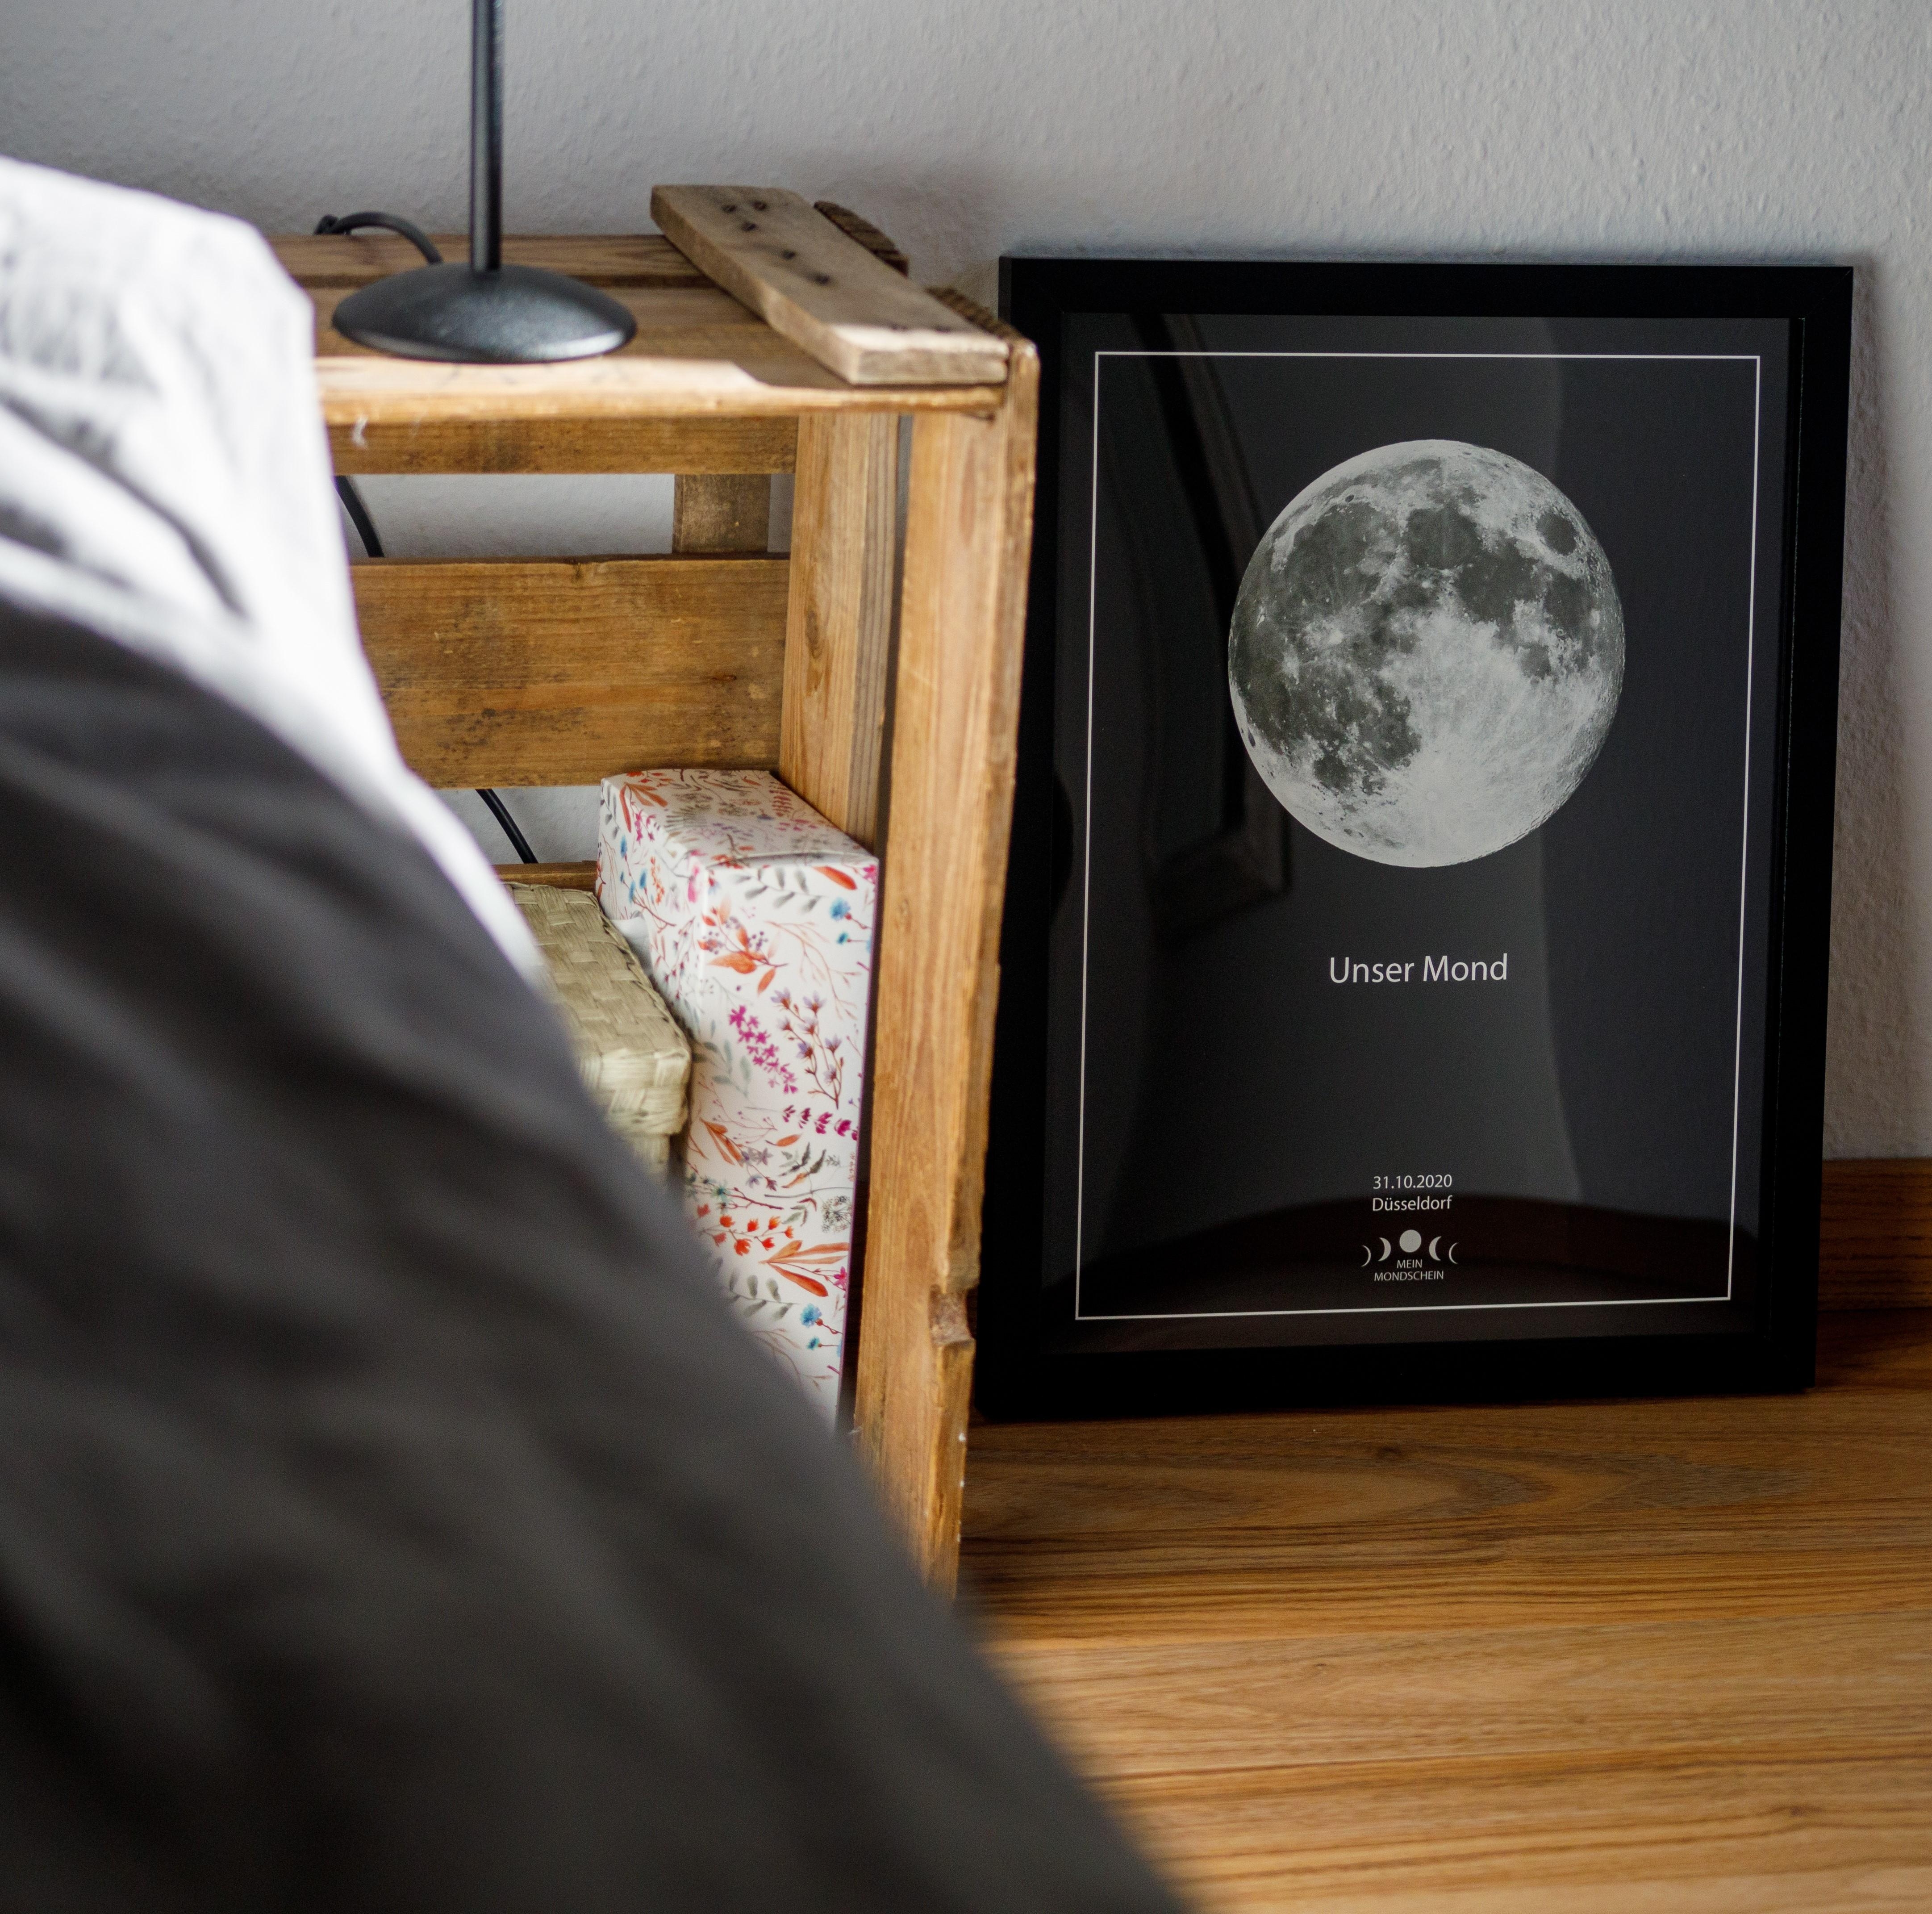 Der Mond direkt neben dem Bett. Wir lieben es! #lieblingsposter 